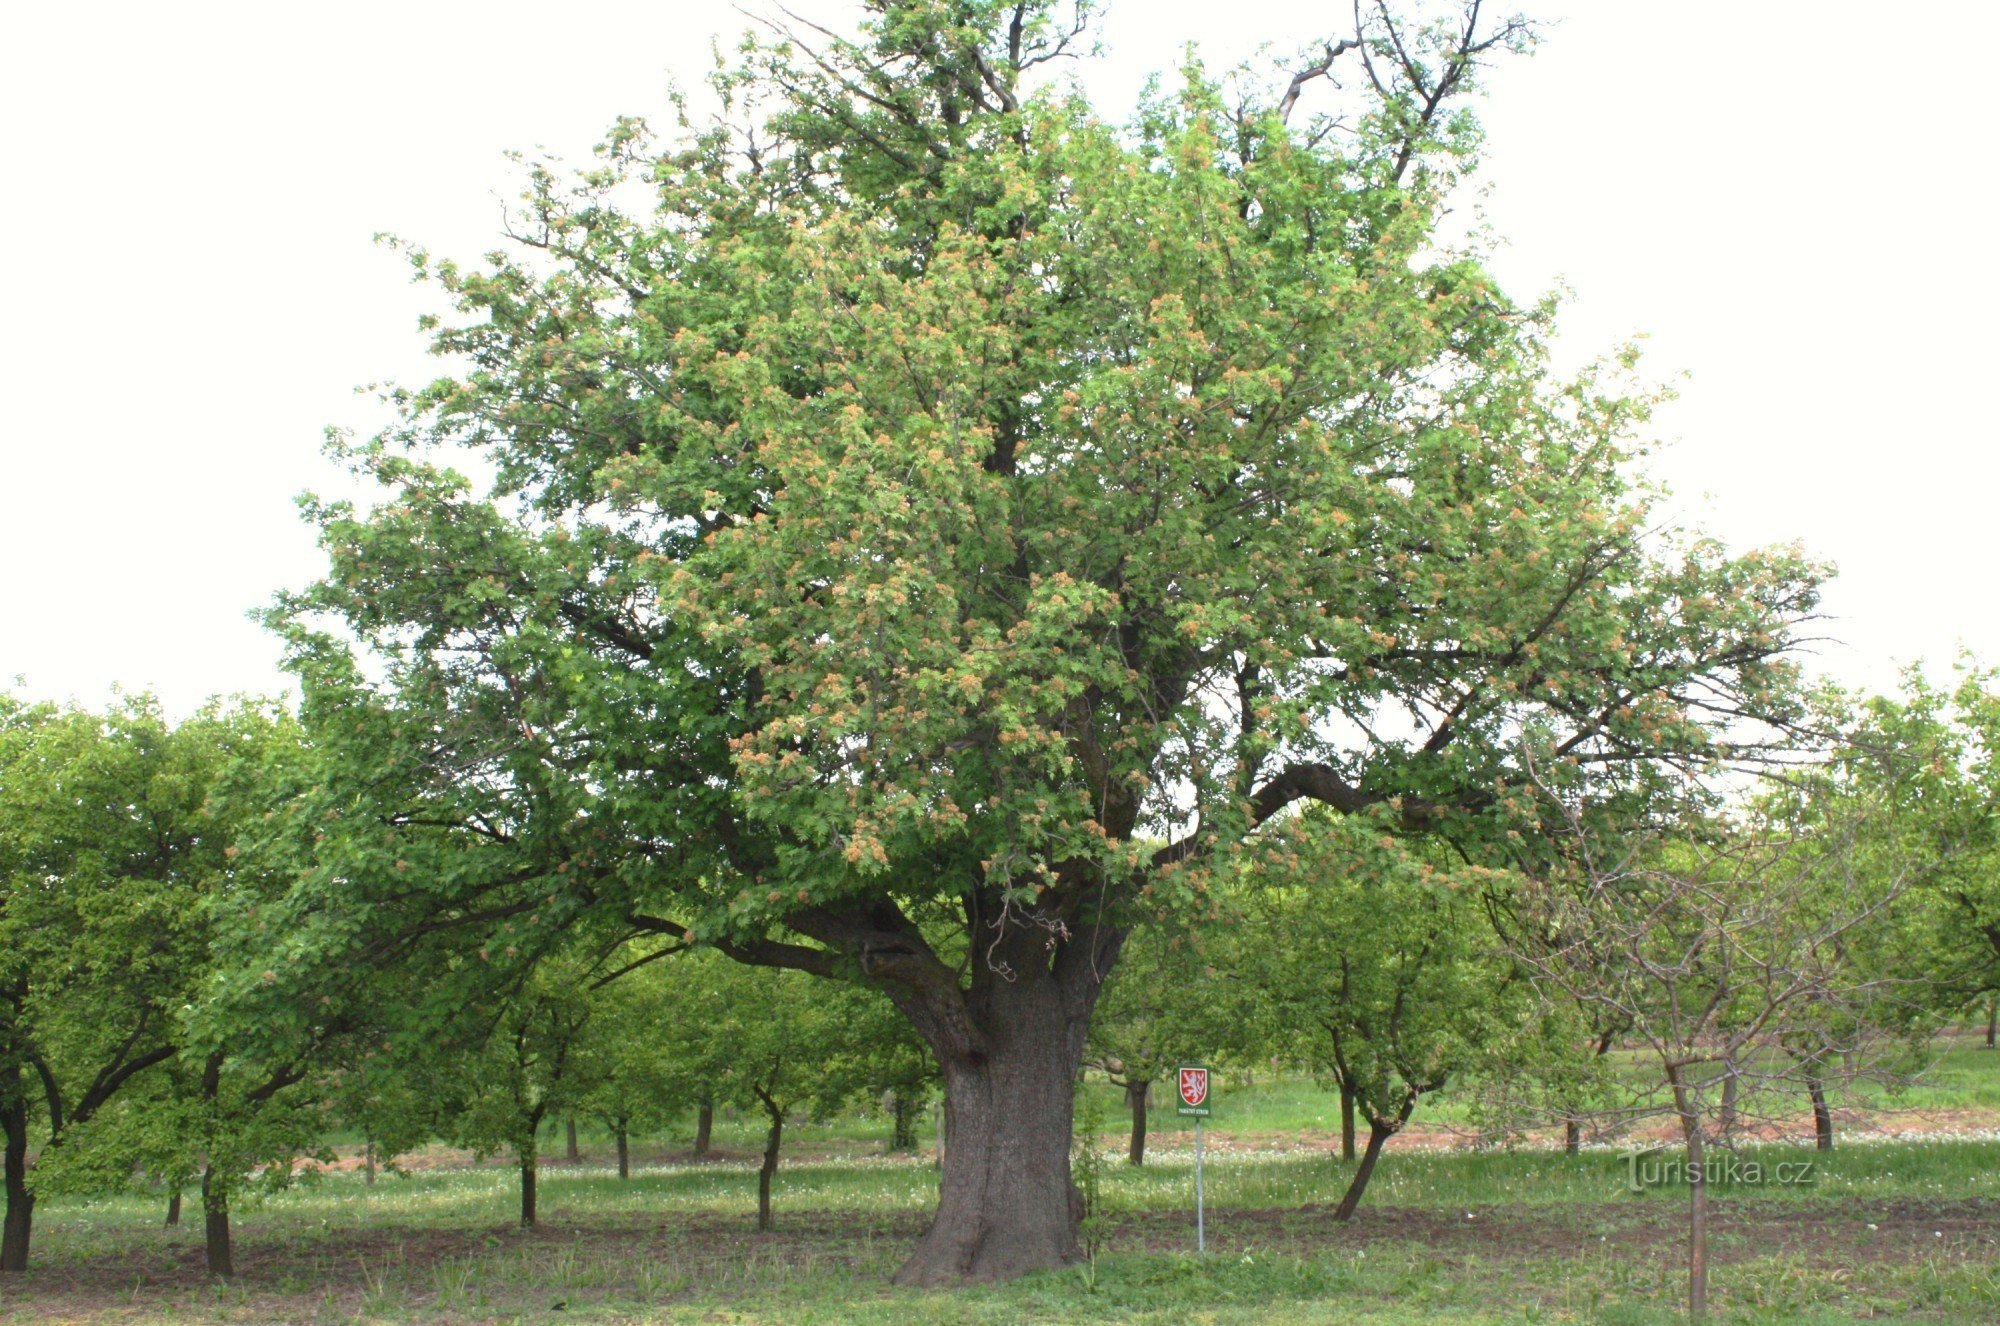 Nemčičky - một cây anh đào đáng nhớ